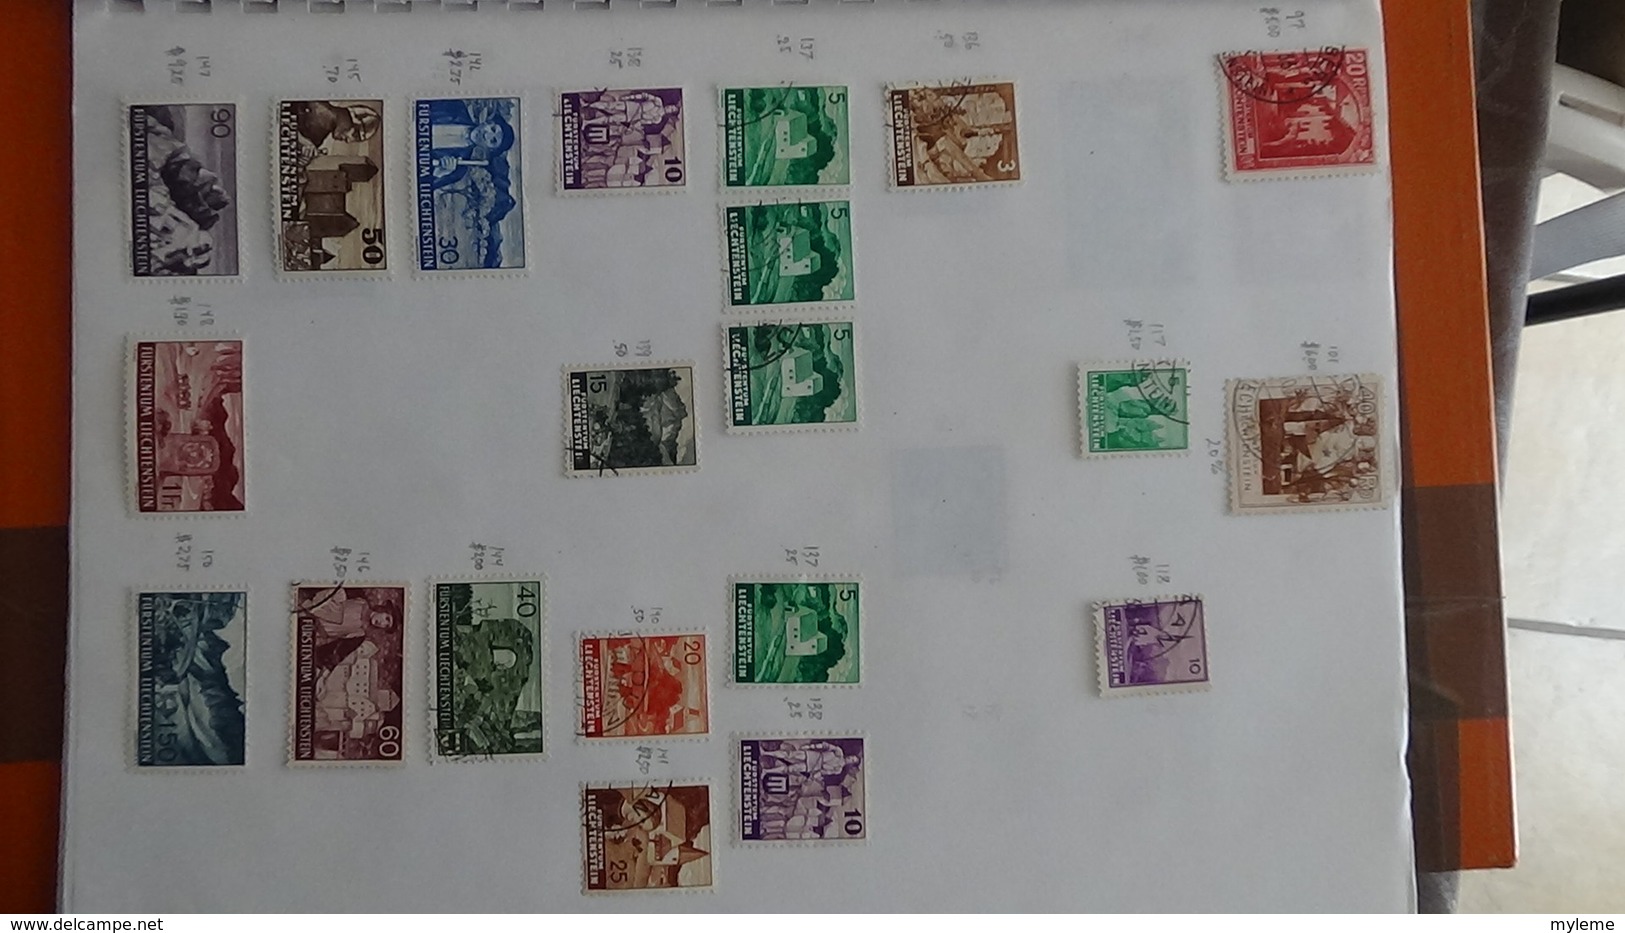 A249 Cahier de timbres de Suisse et Liechtenstein !!! Voir commentaires